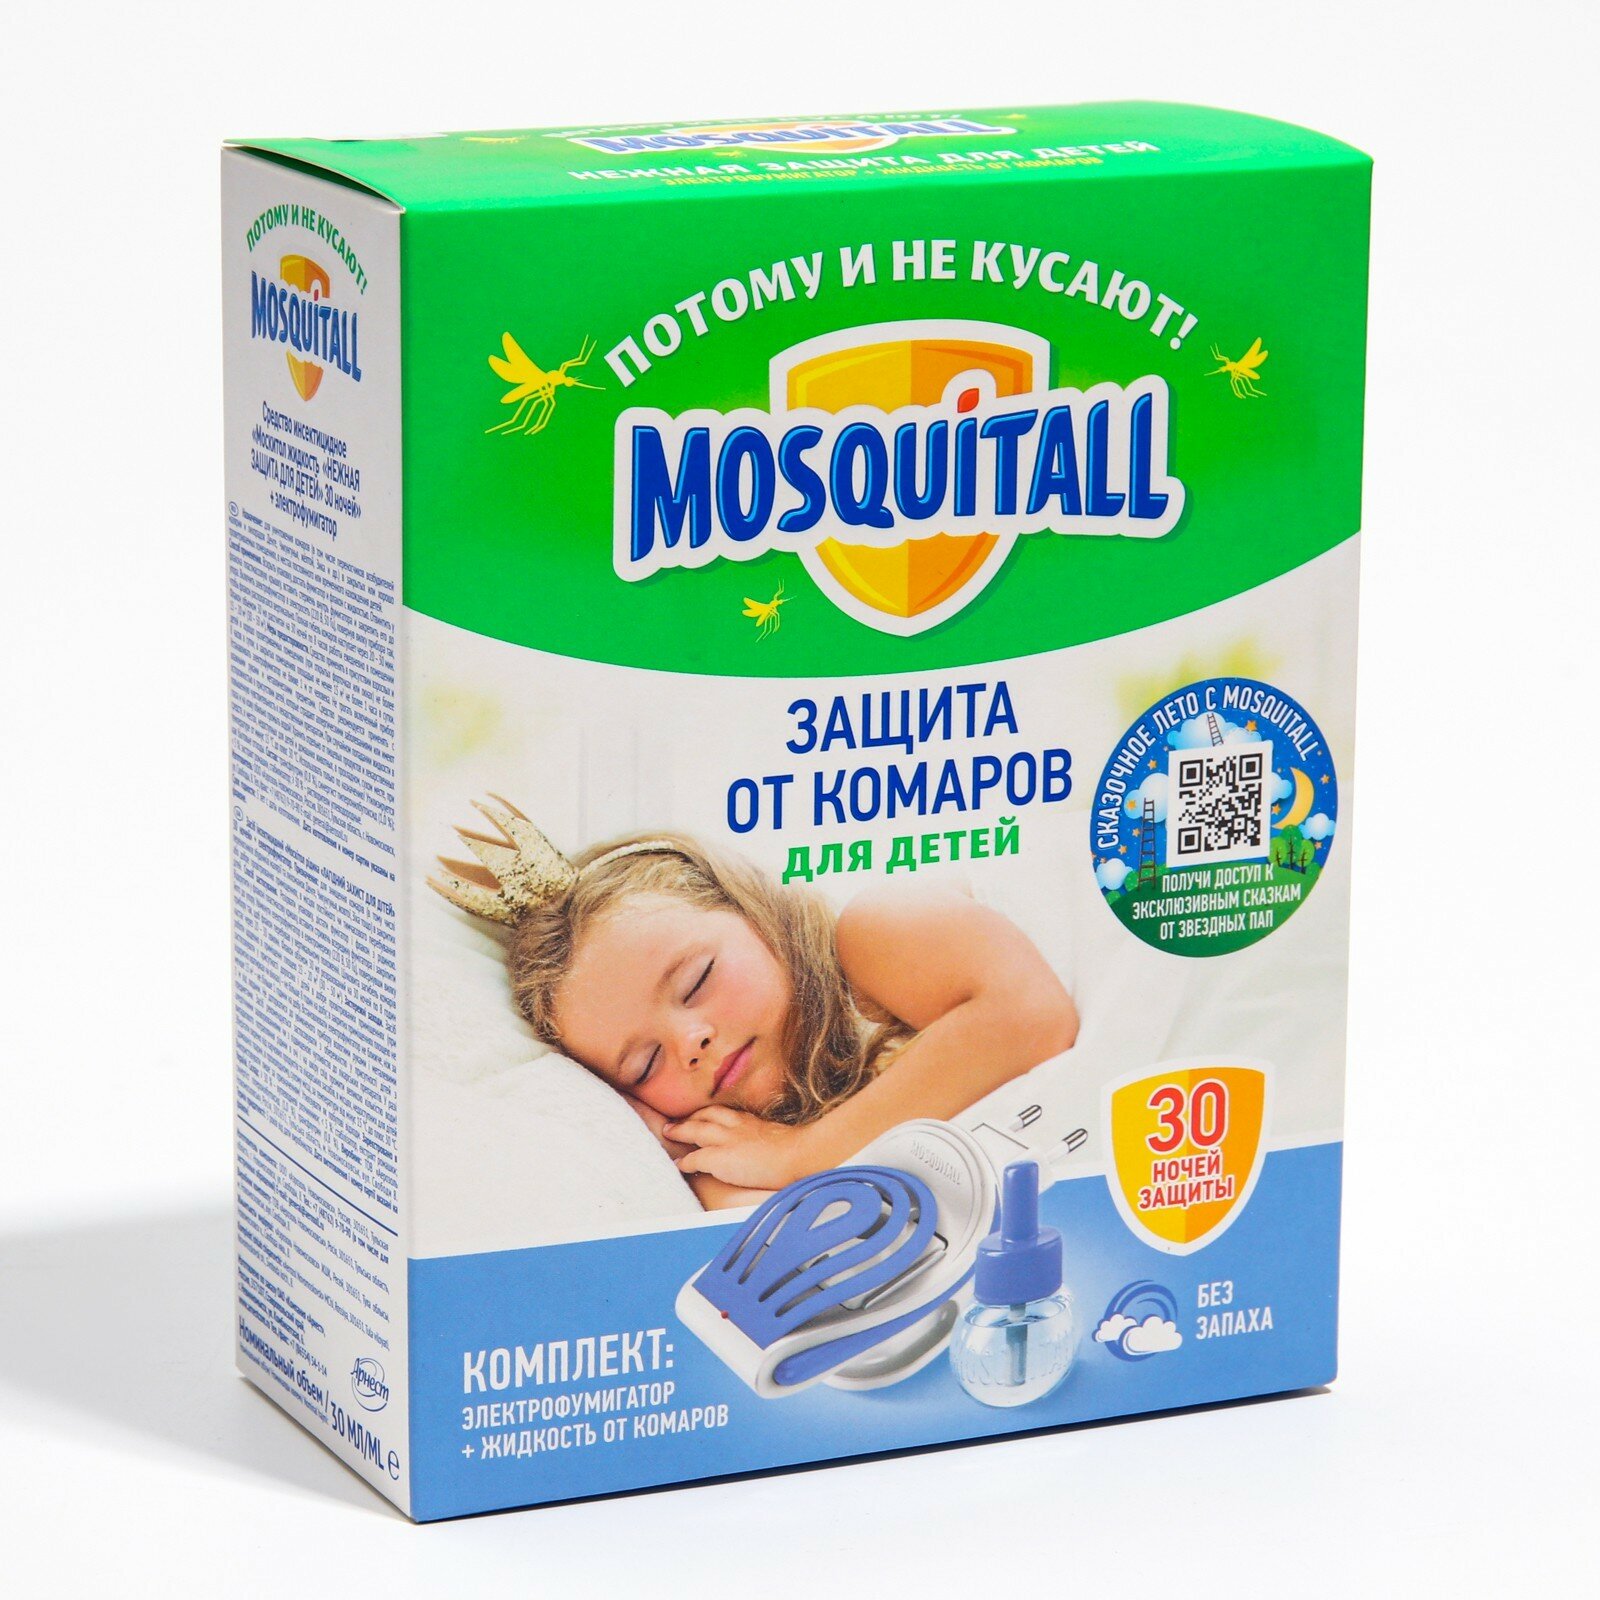 Комплект "Нежная защита для детей", электрофумигатор + жидкость от комаров, 30 но